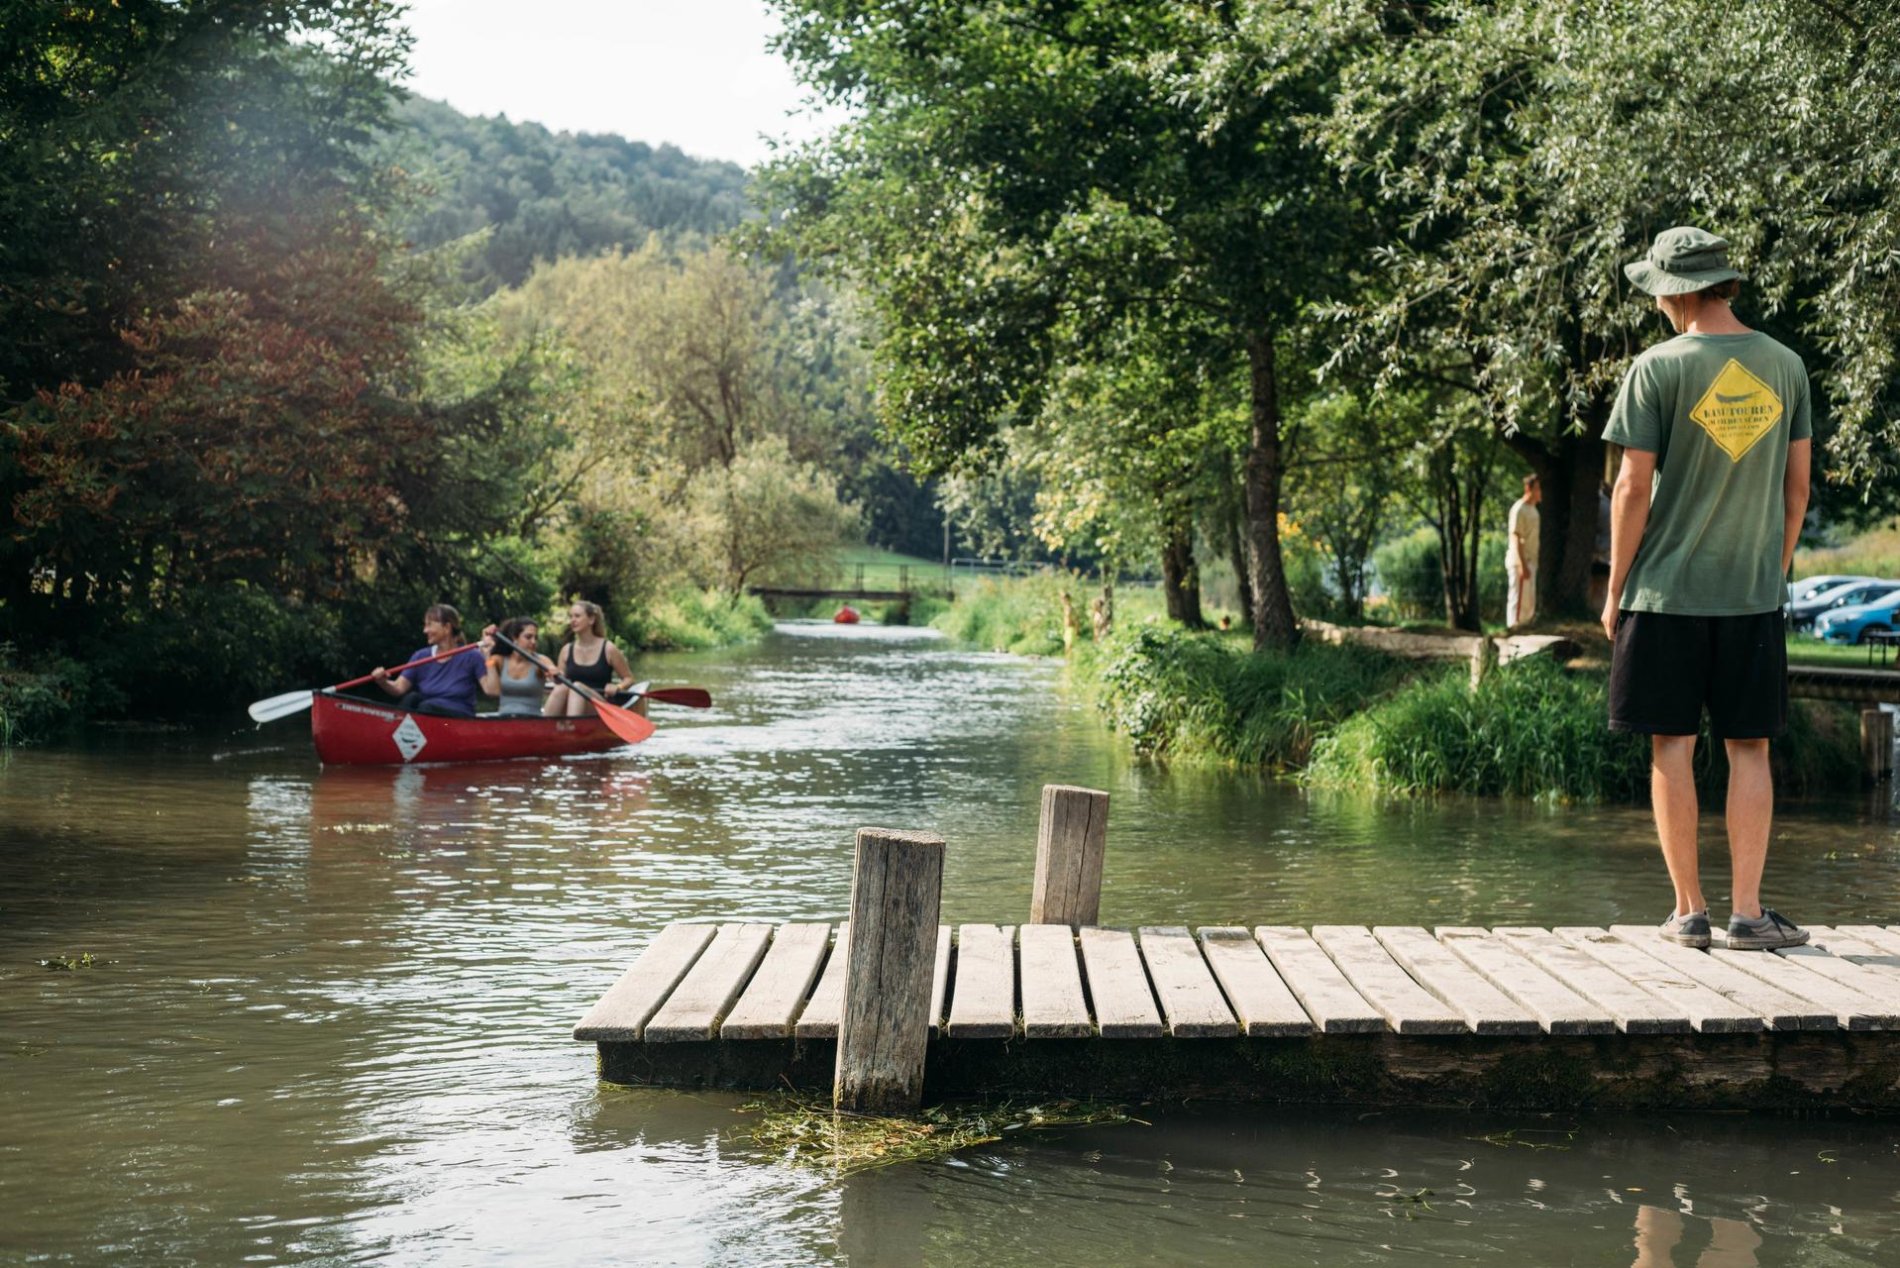 Auf einem Steg an einem Fluss steht eine Person mit Hut und blickt zu einem Kanu mit drei Personen, die gerade vorbei paddeln. Am Ufer sind Bäume und Pflanzen.